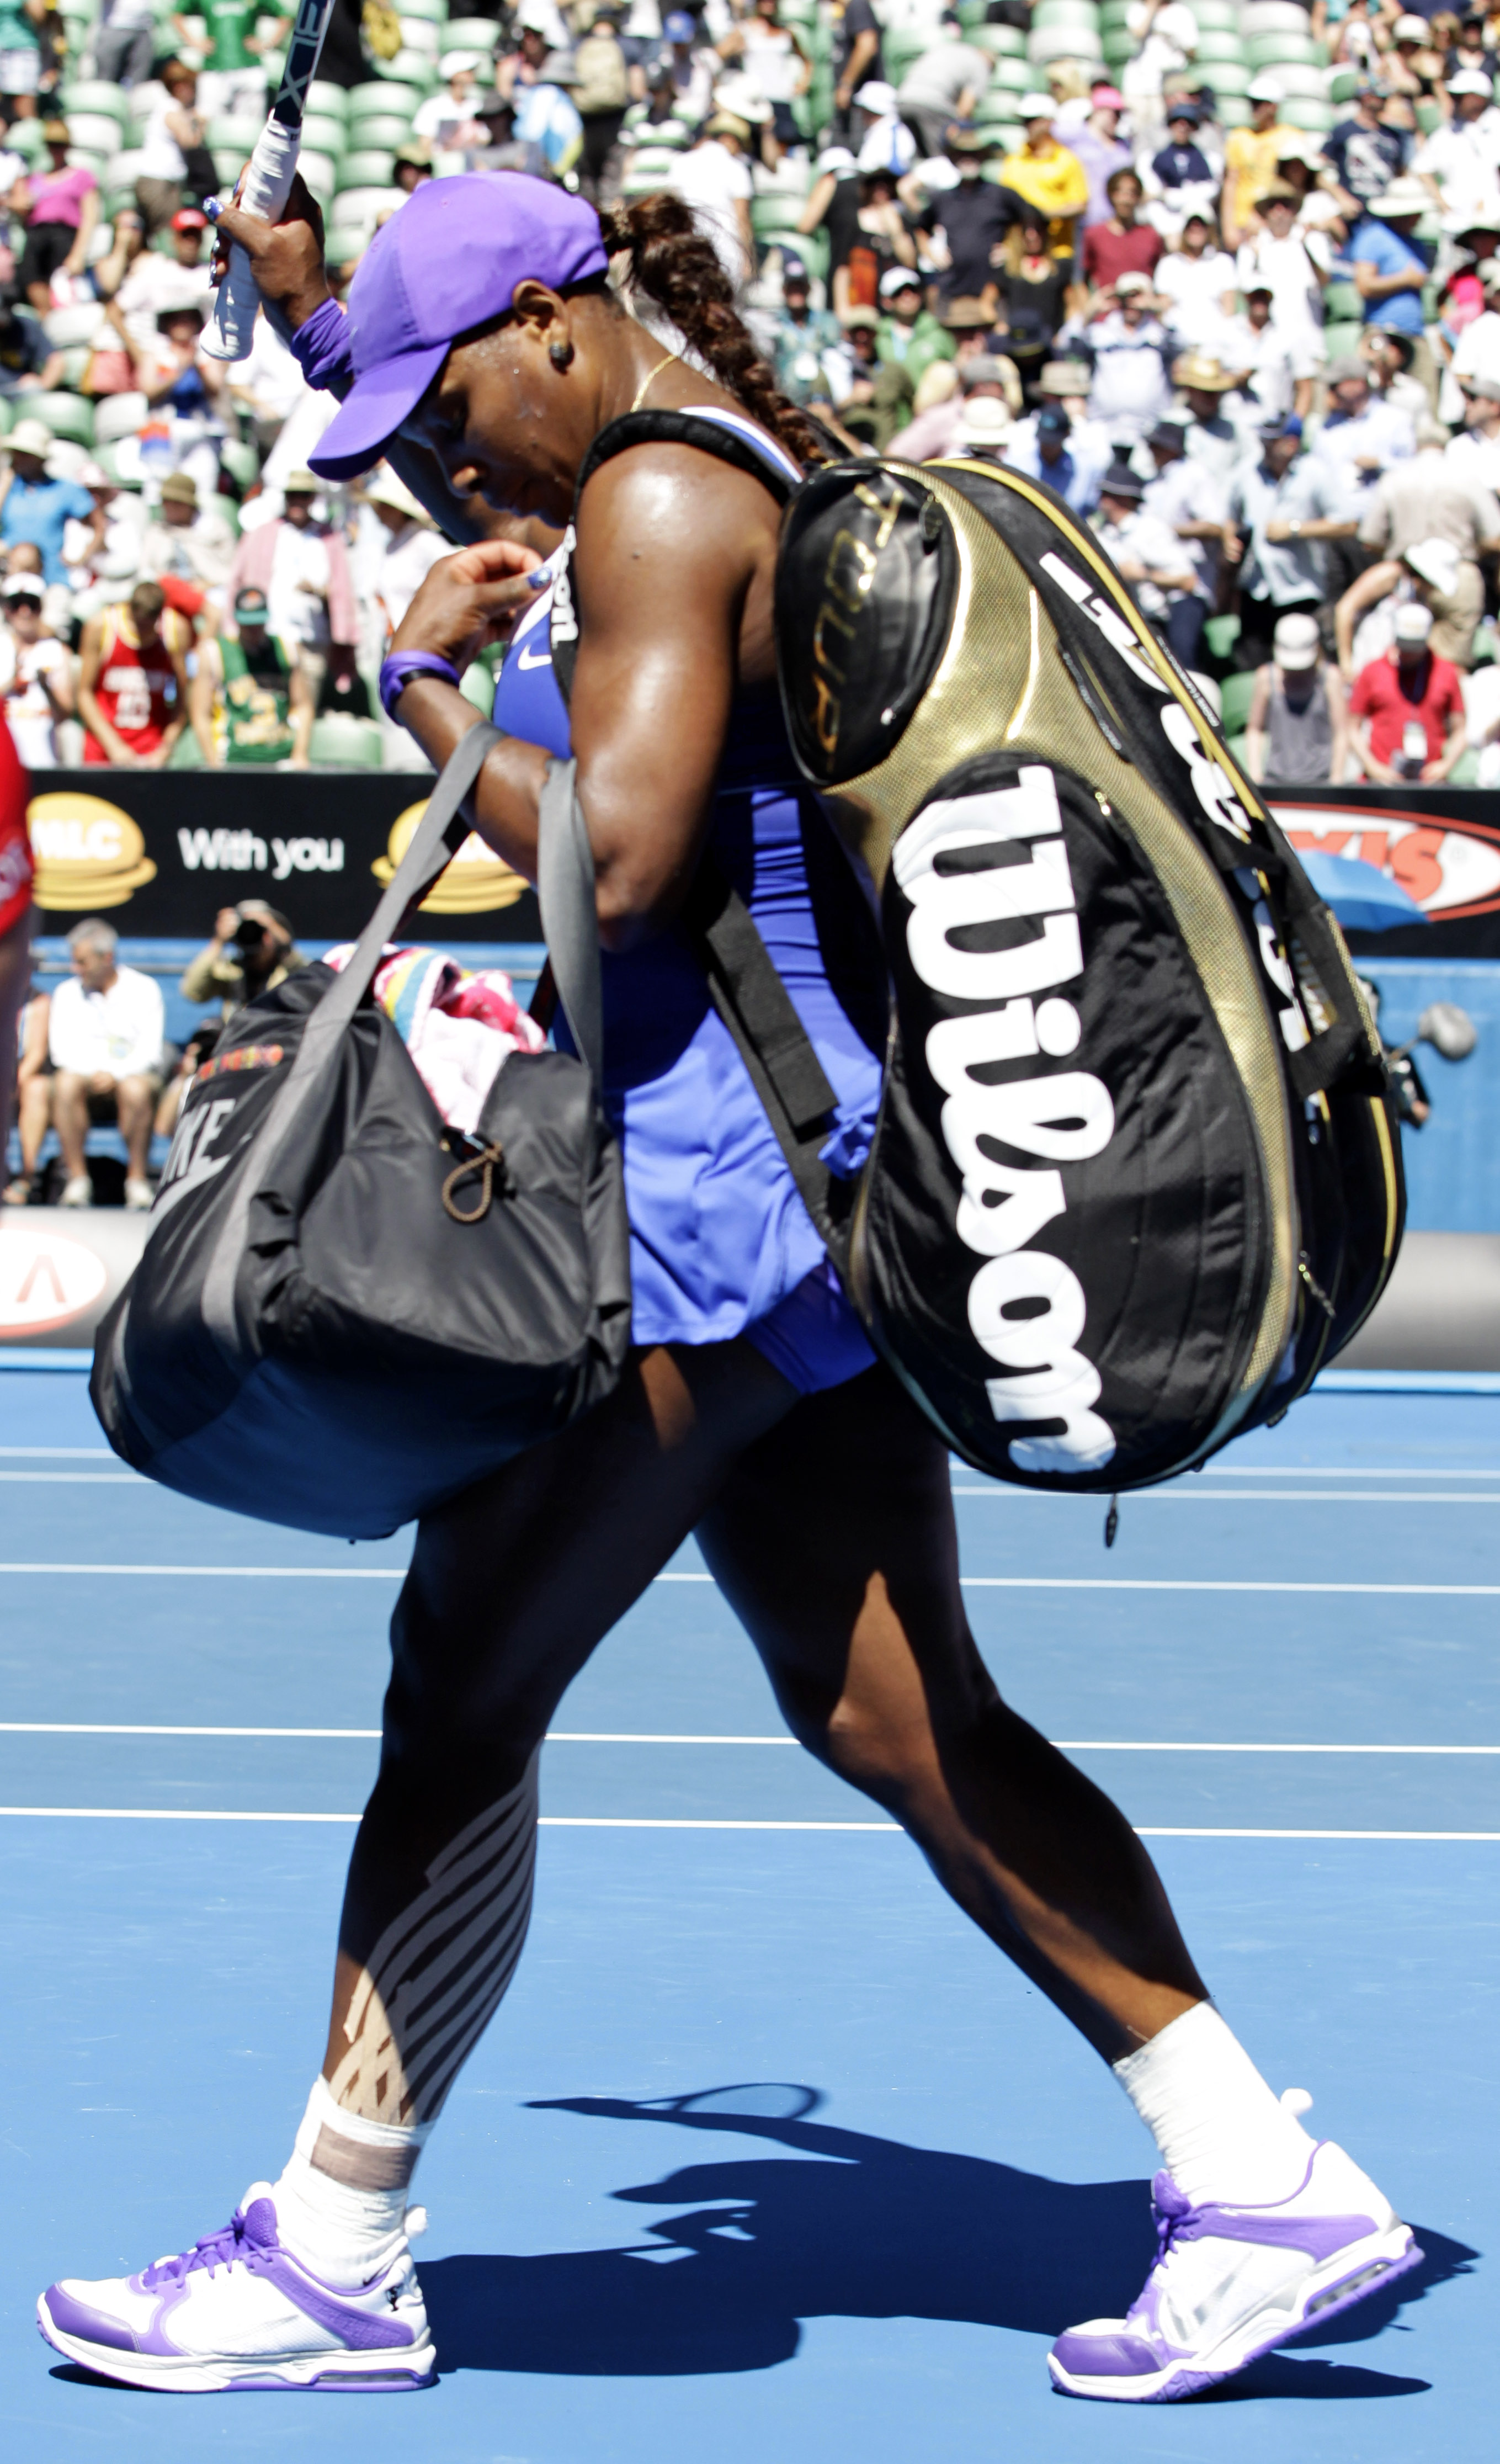 Serena Williams åkte ut i kvarten, dessförinnan hade hon gått ut och sagt att hon inte längre gillar tennis. Konstigt, kan tyckas...